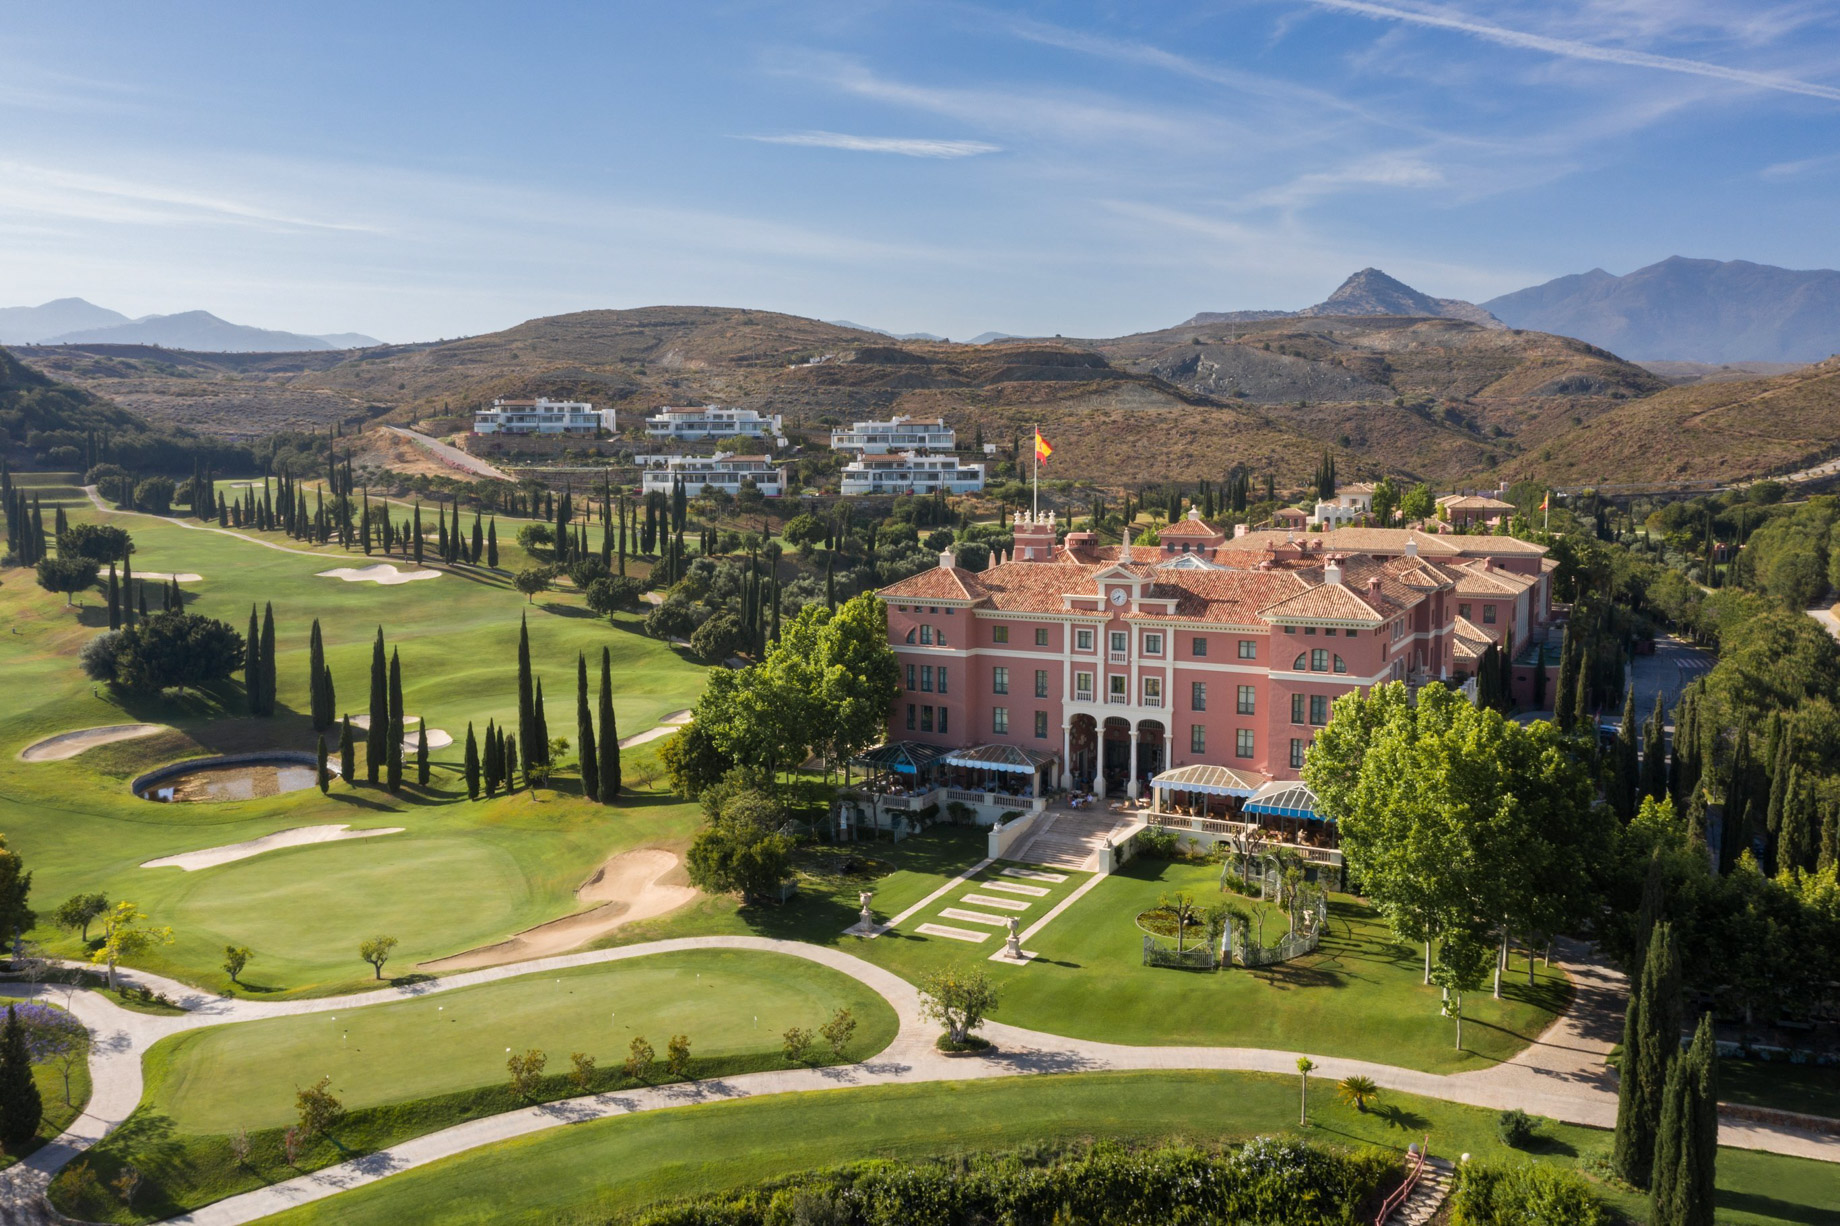 Anantara Villa Padierna Palace Benahavís Marbella Resort - Spain - Exterior Aerial View